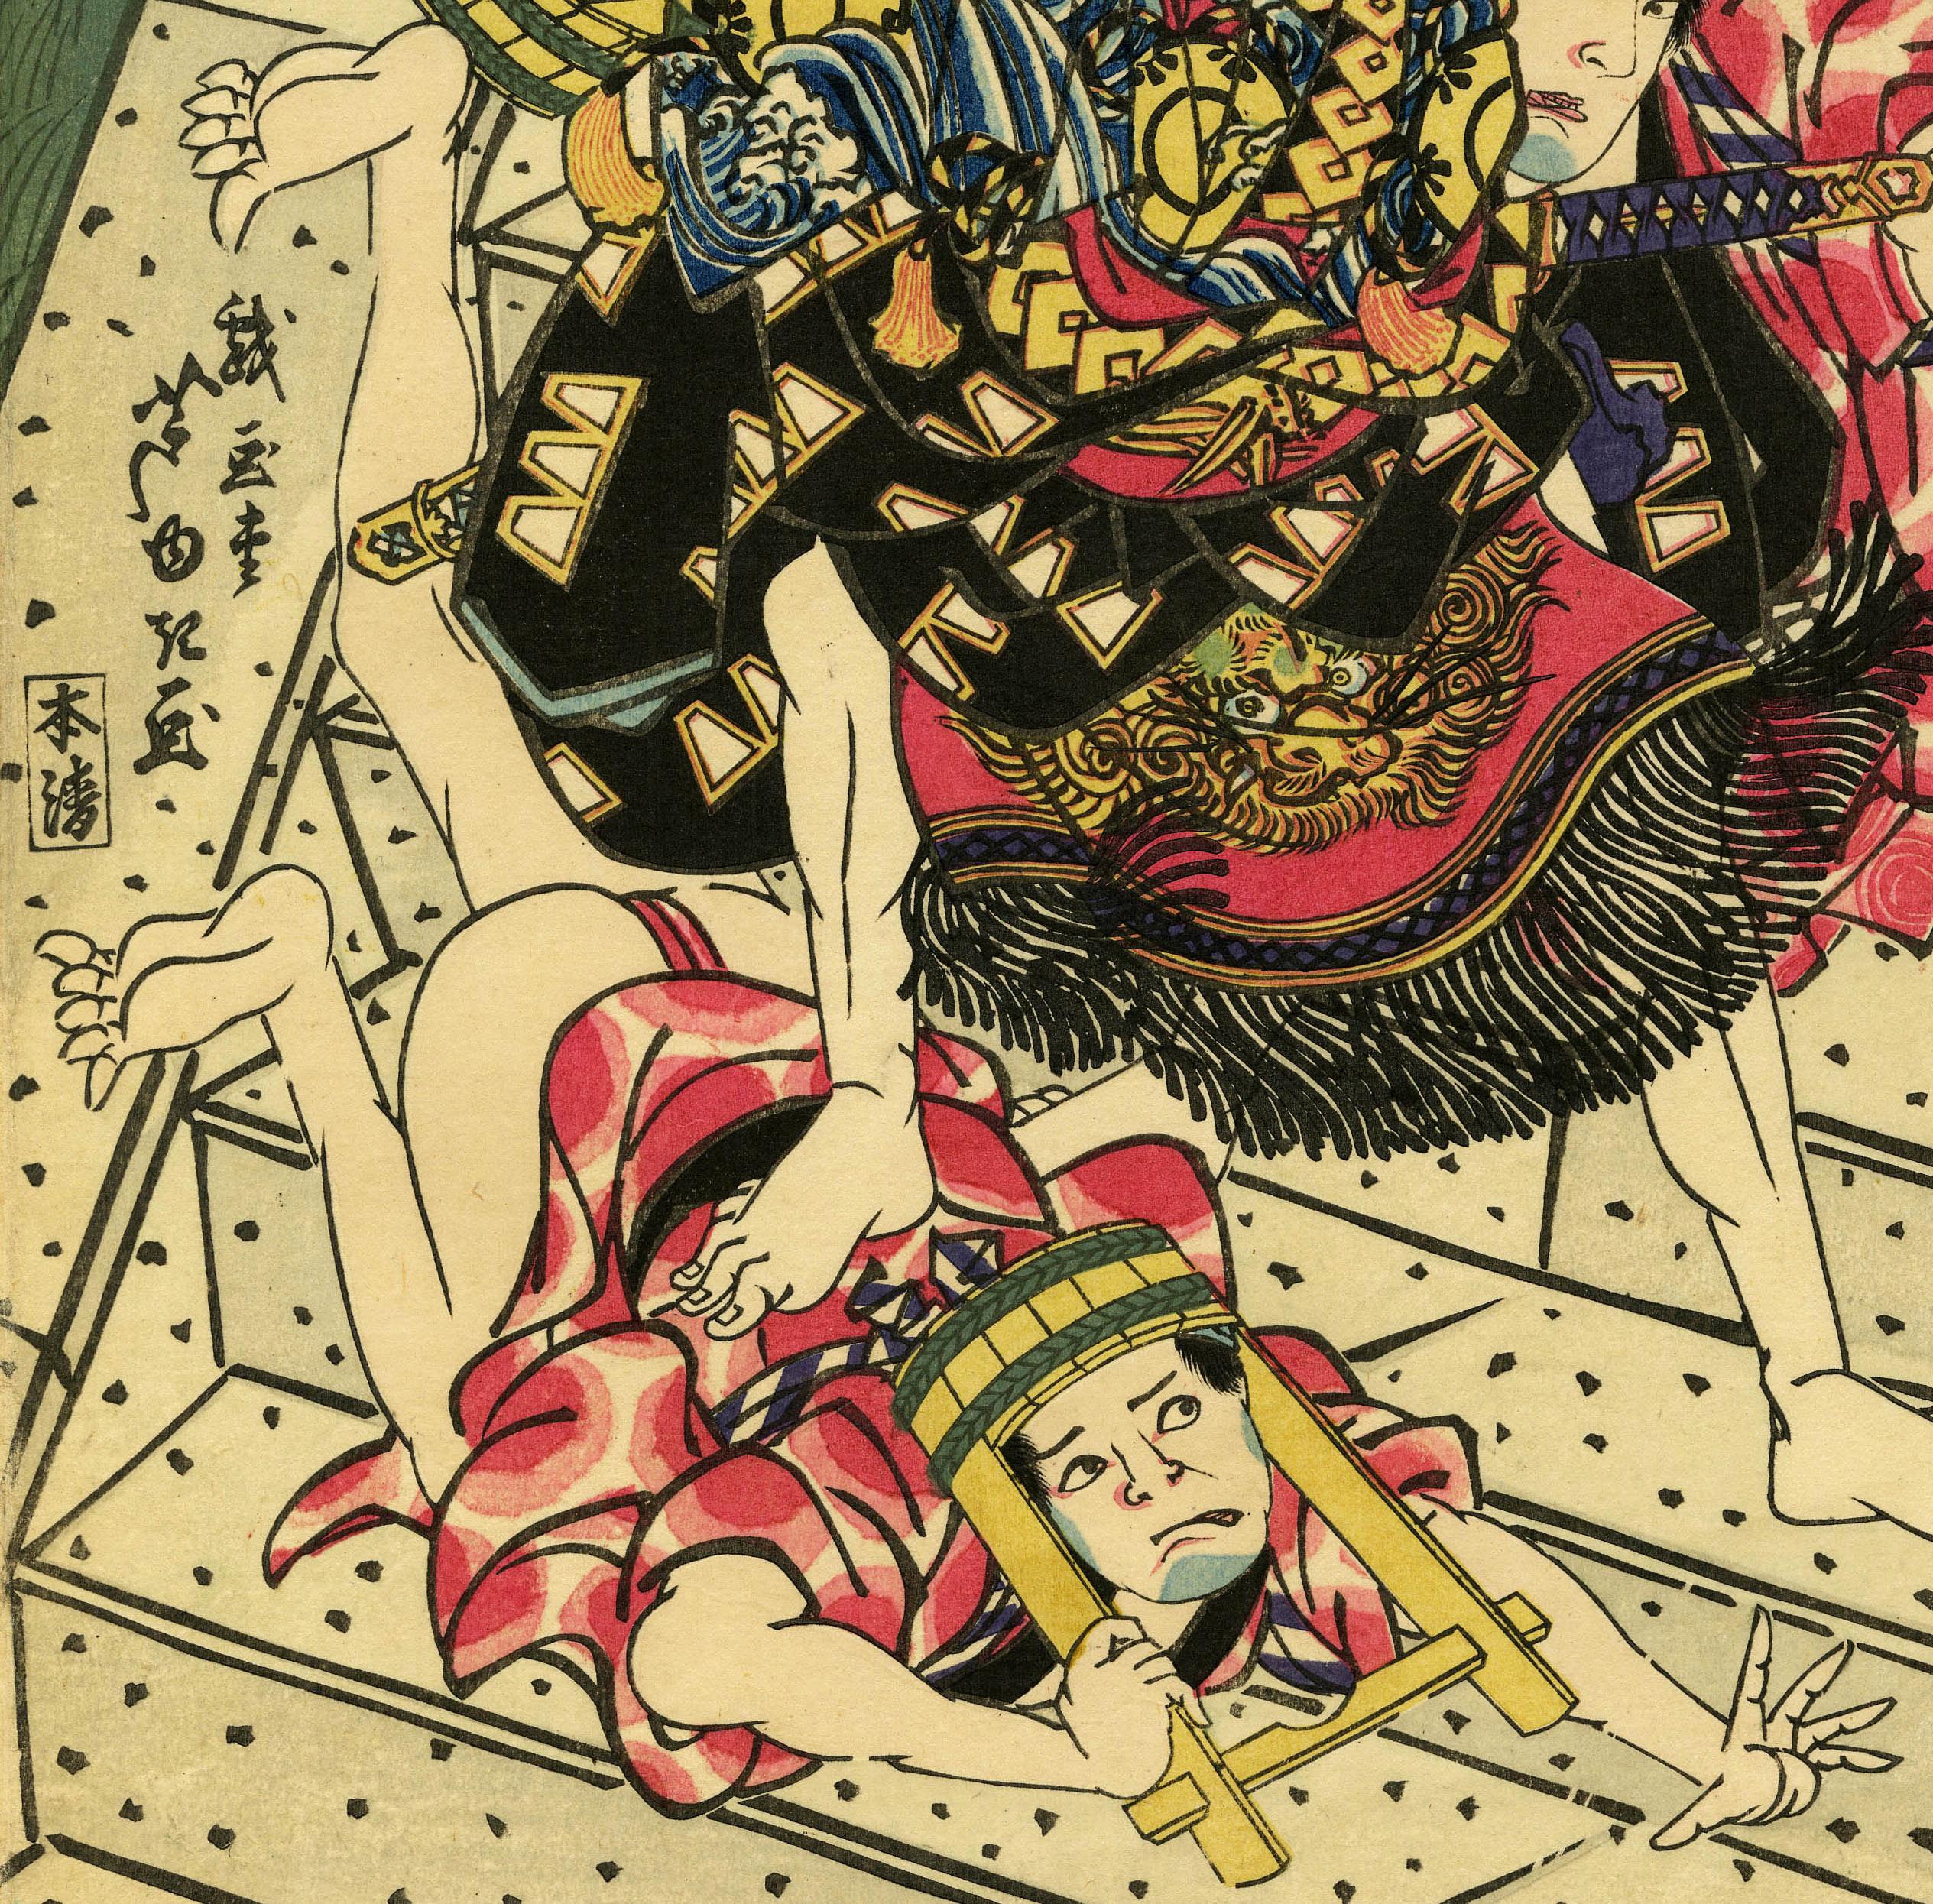 Arashi Rikan II in einer Kabuki-Szene aus Osaka
Farbholzschnitt, um 1827
Signiert Mitte links (siehe Foto)
Beschriftung oben links (siehe Foto)
Format: oban
Herausgeber: Honsei
Der Schauspieler, in seiner Rolle, erledigt drei Räuber auf einer